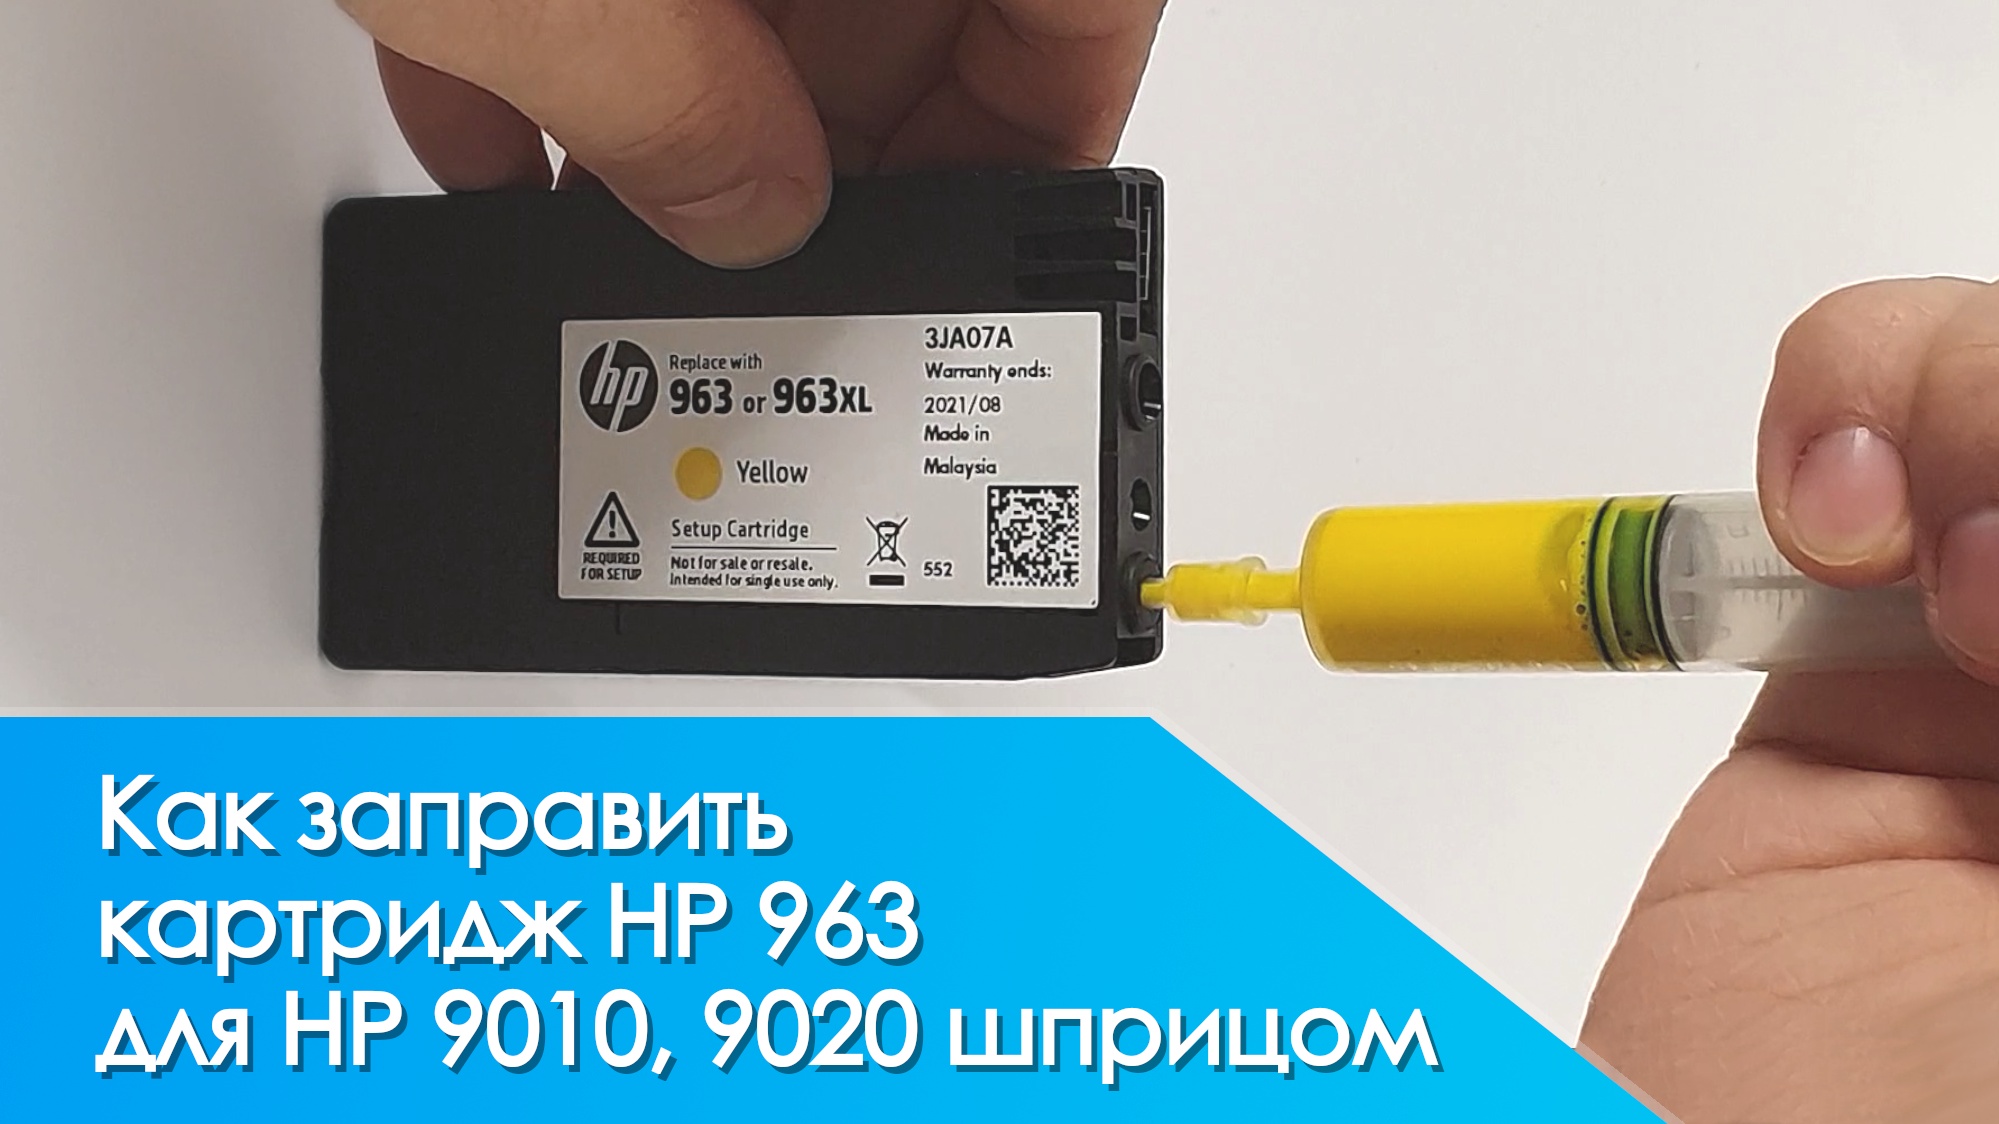 Купить заправка HP Laser в Москве в М malino-v.ru, доставка по Москве